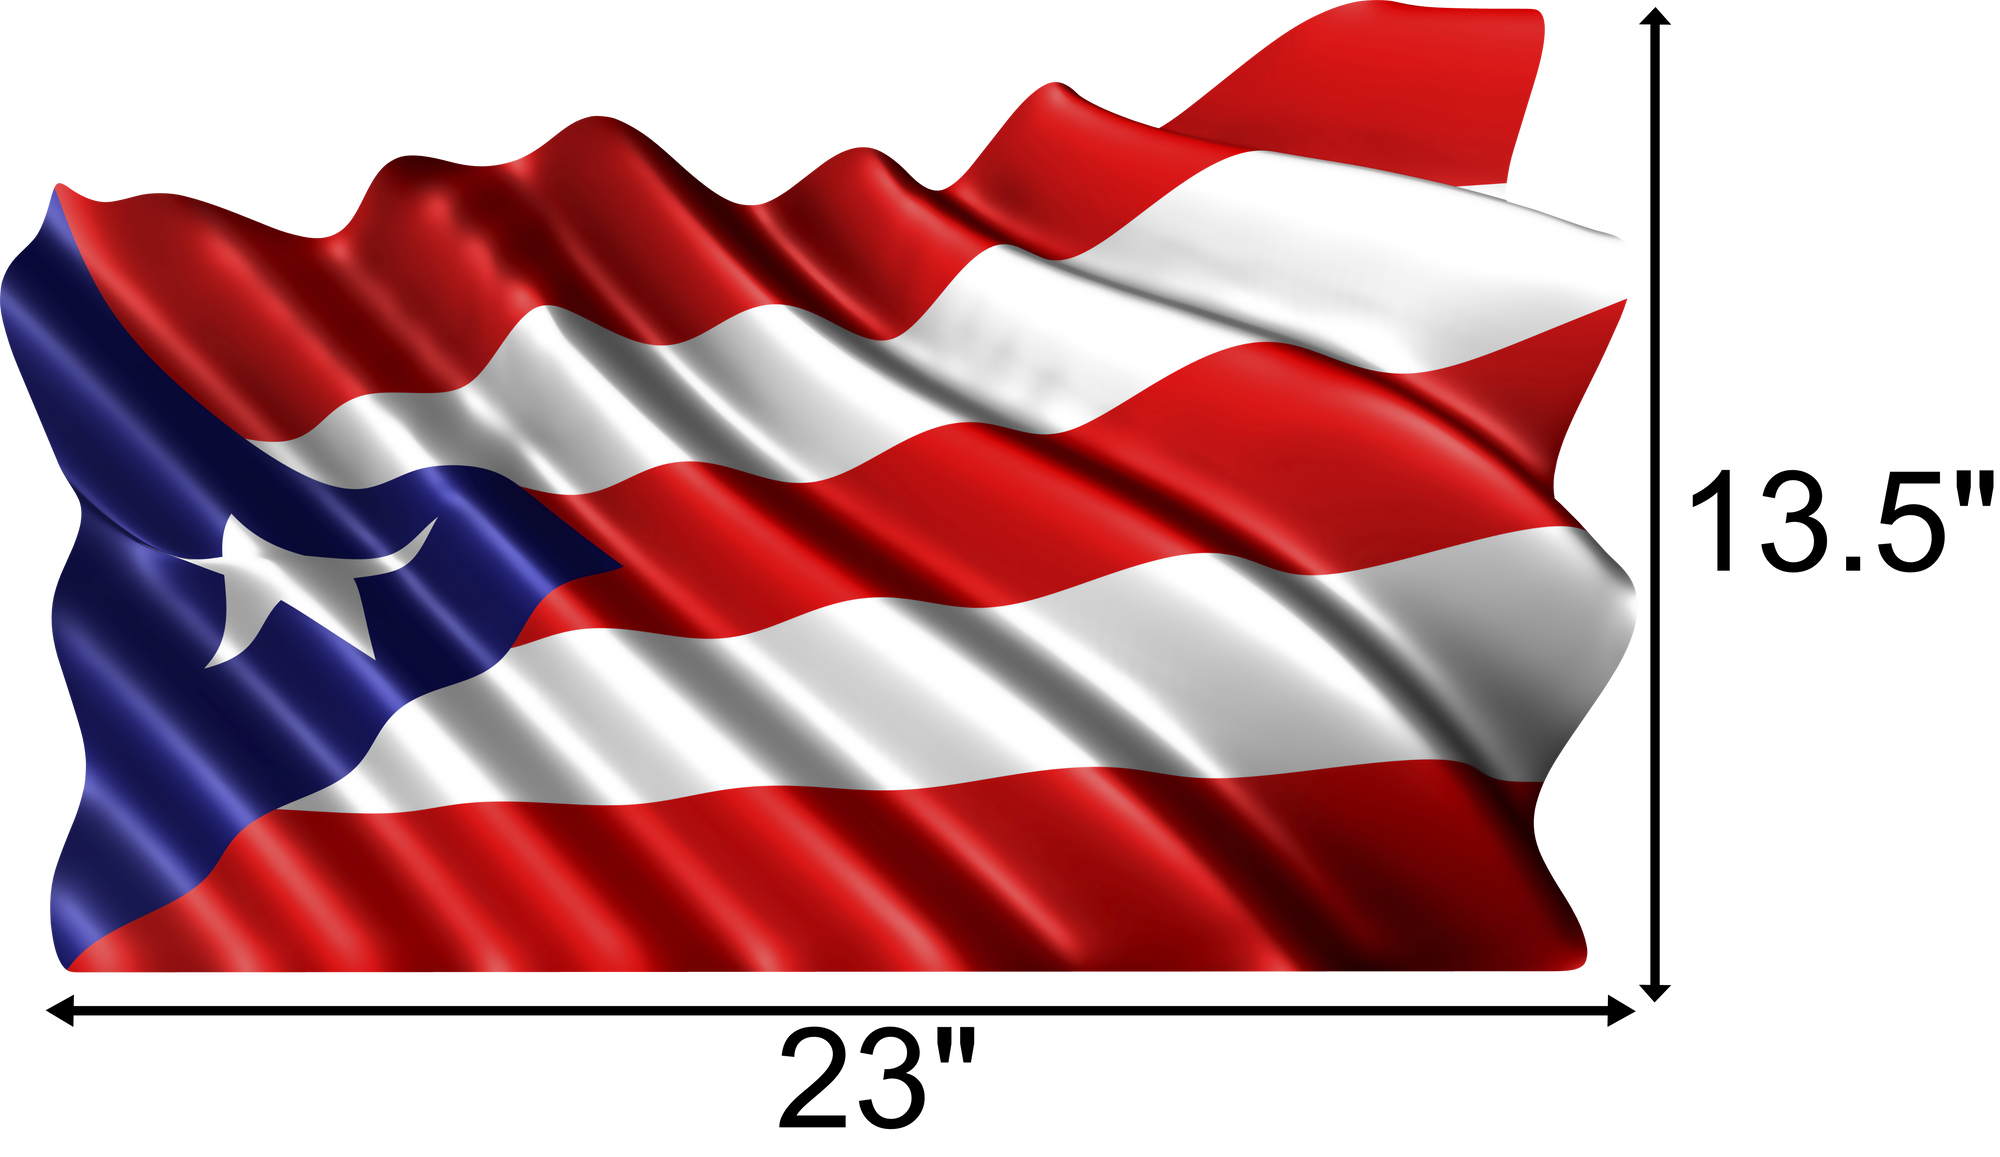 Puerto Rico Flag Waving 23" x 13.5"